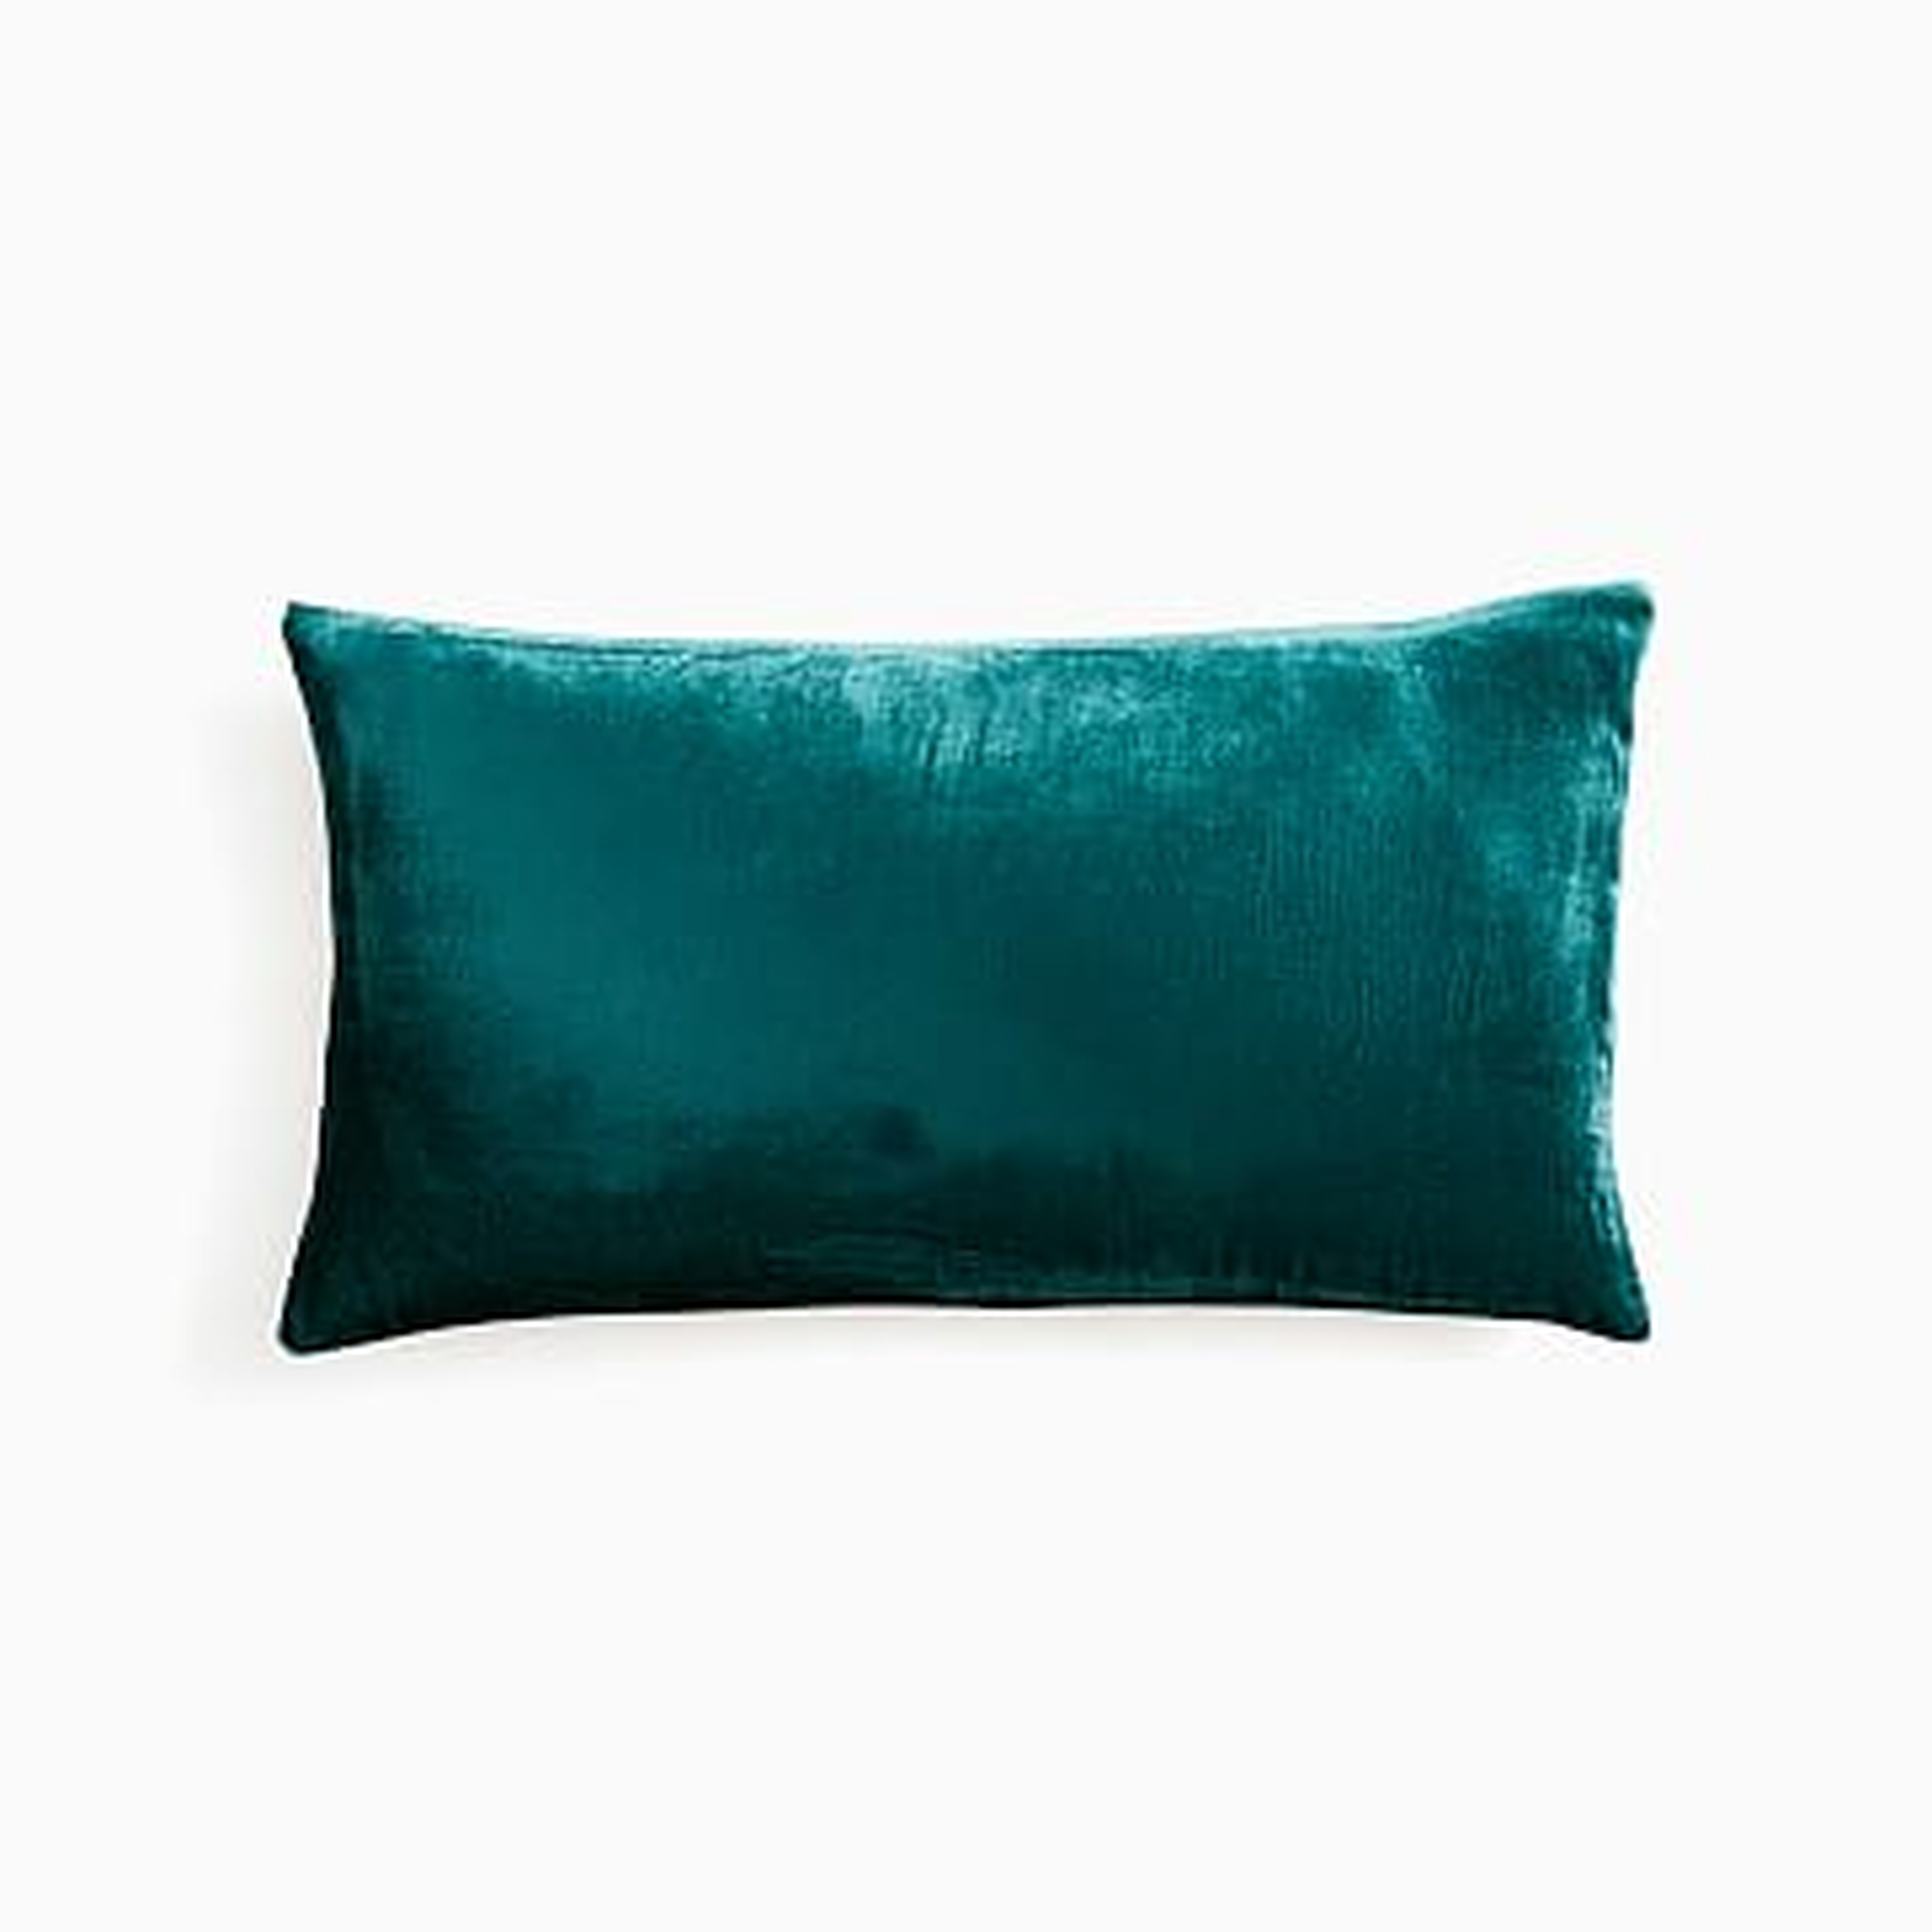 Lush Velvet Pillow Cover, 12"x21", Botanical Garden - West Elm